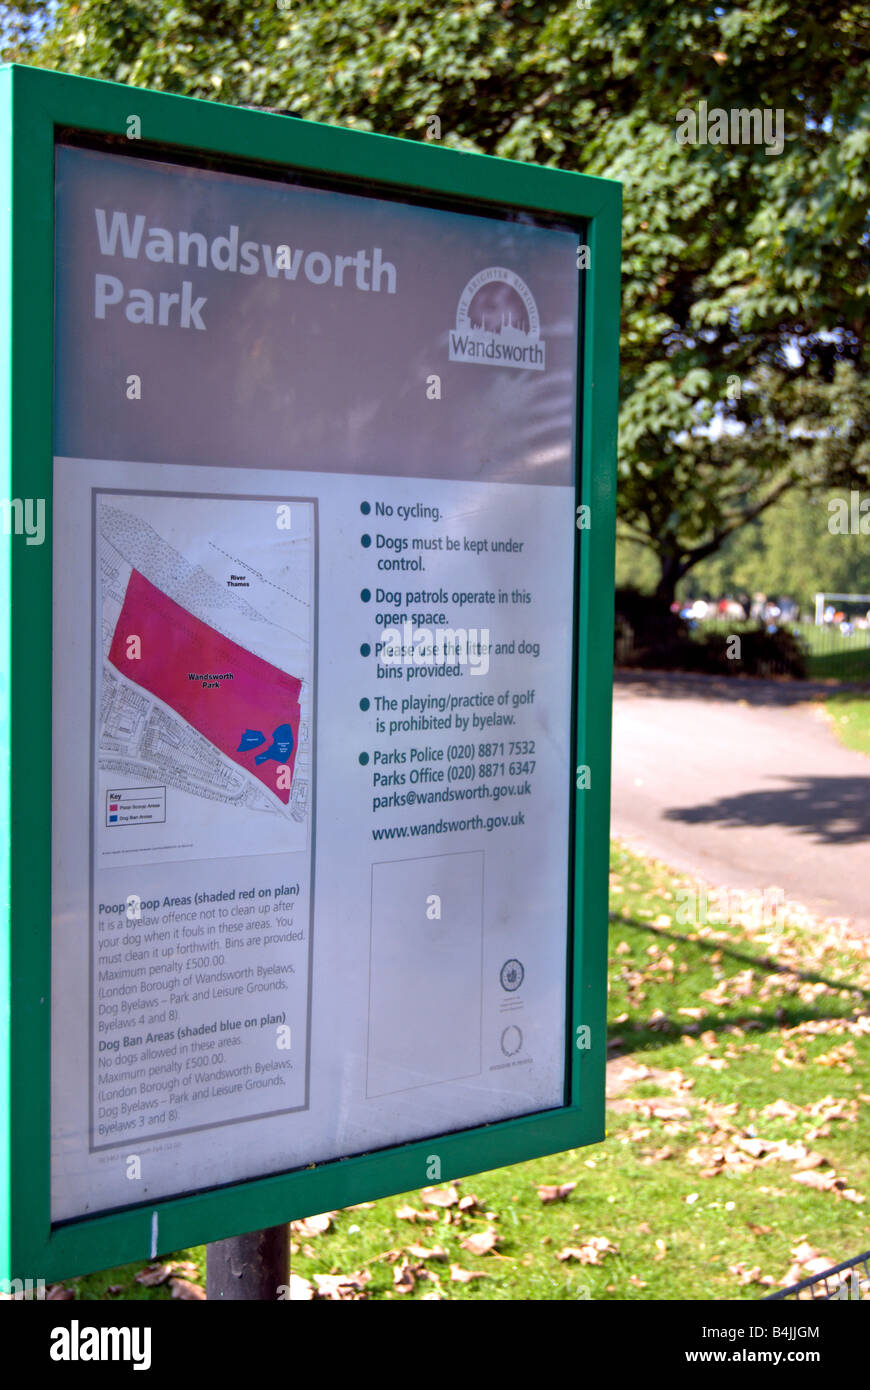 Avviso con norme e regolamenti per wandsworth park, a sud-ovest di Londra - Inghilterra Foto Stock